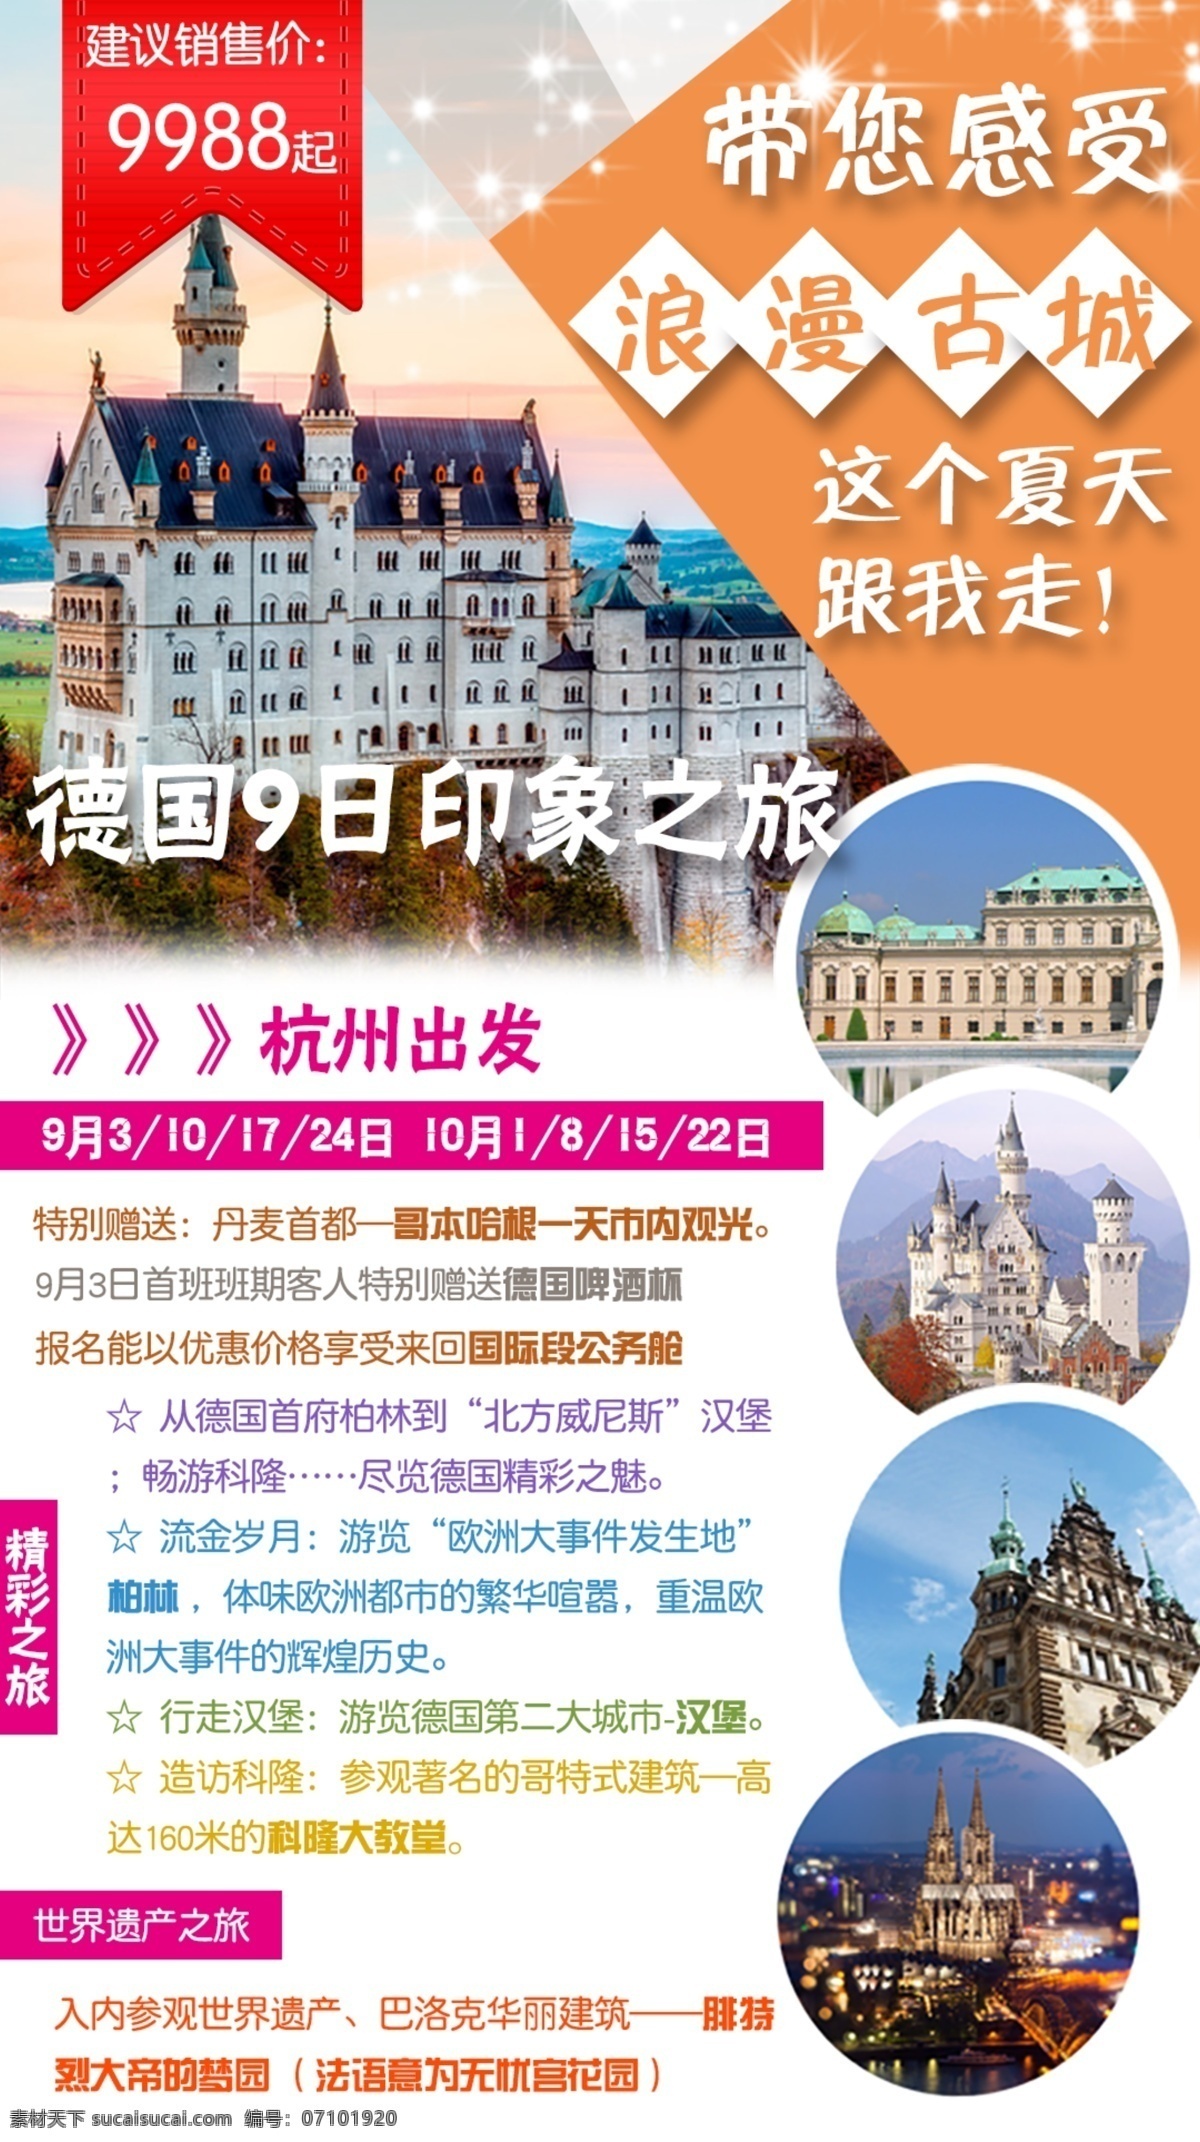 德国旅游 德国9日 印象之旅 杭州出发 新天鹅堡 浪漫古城 白色